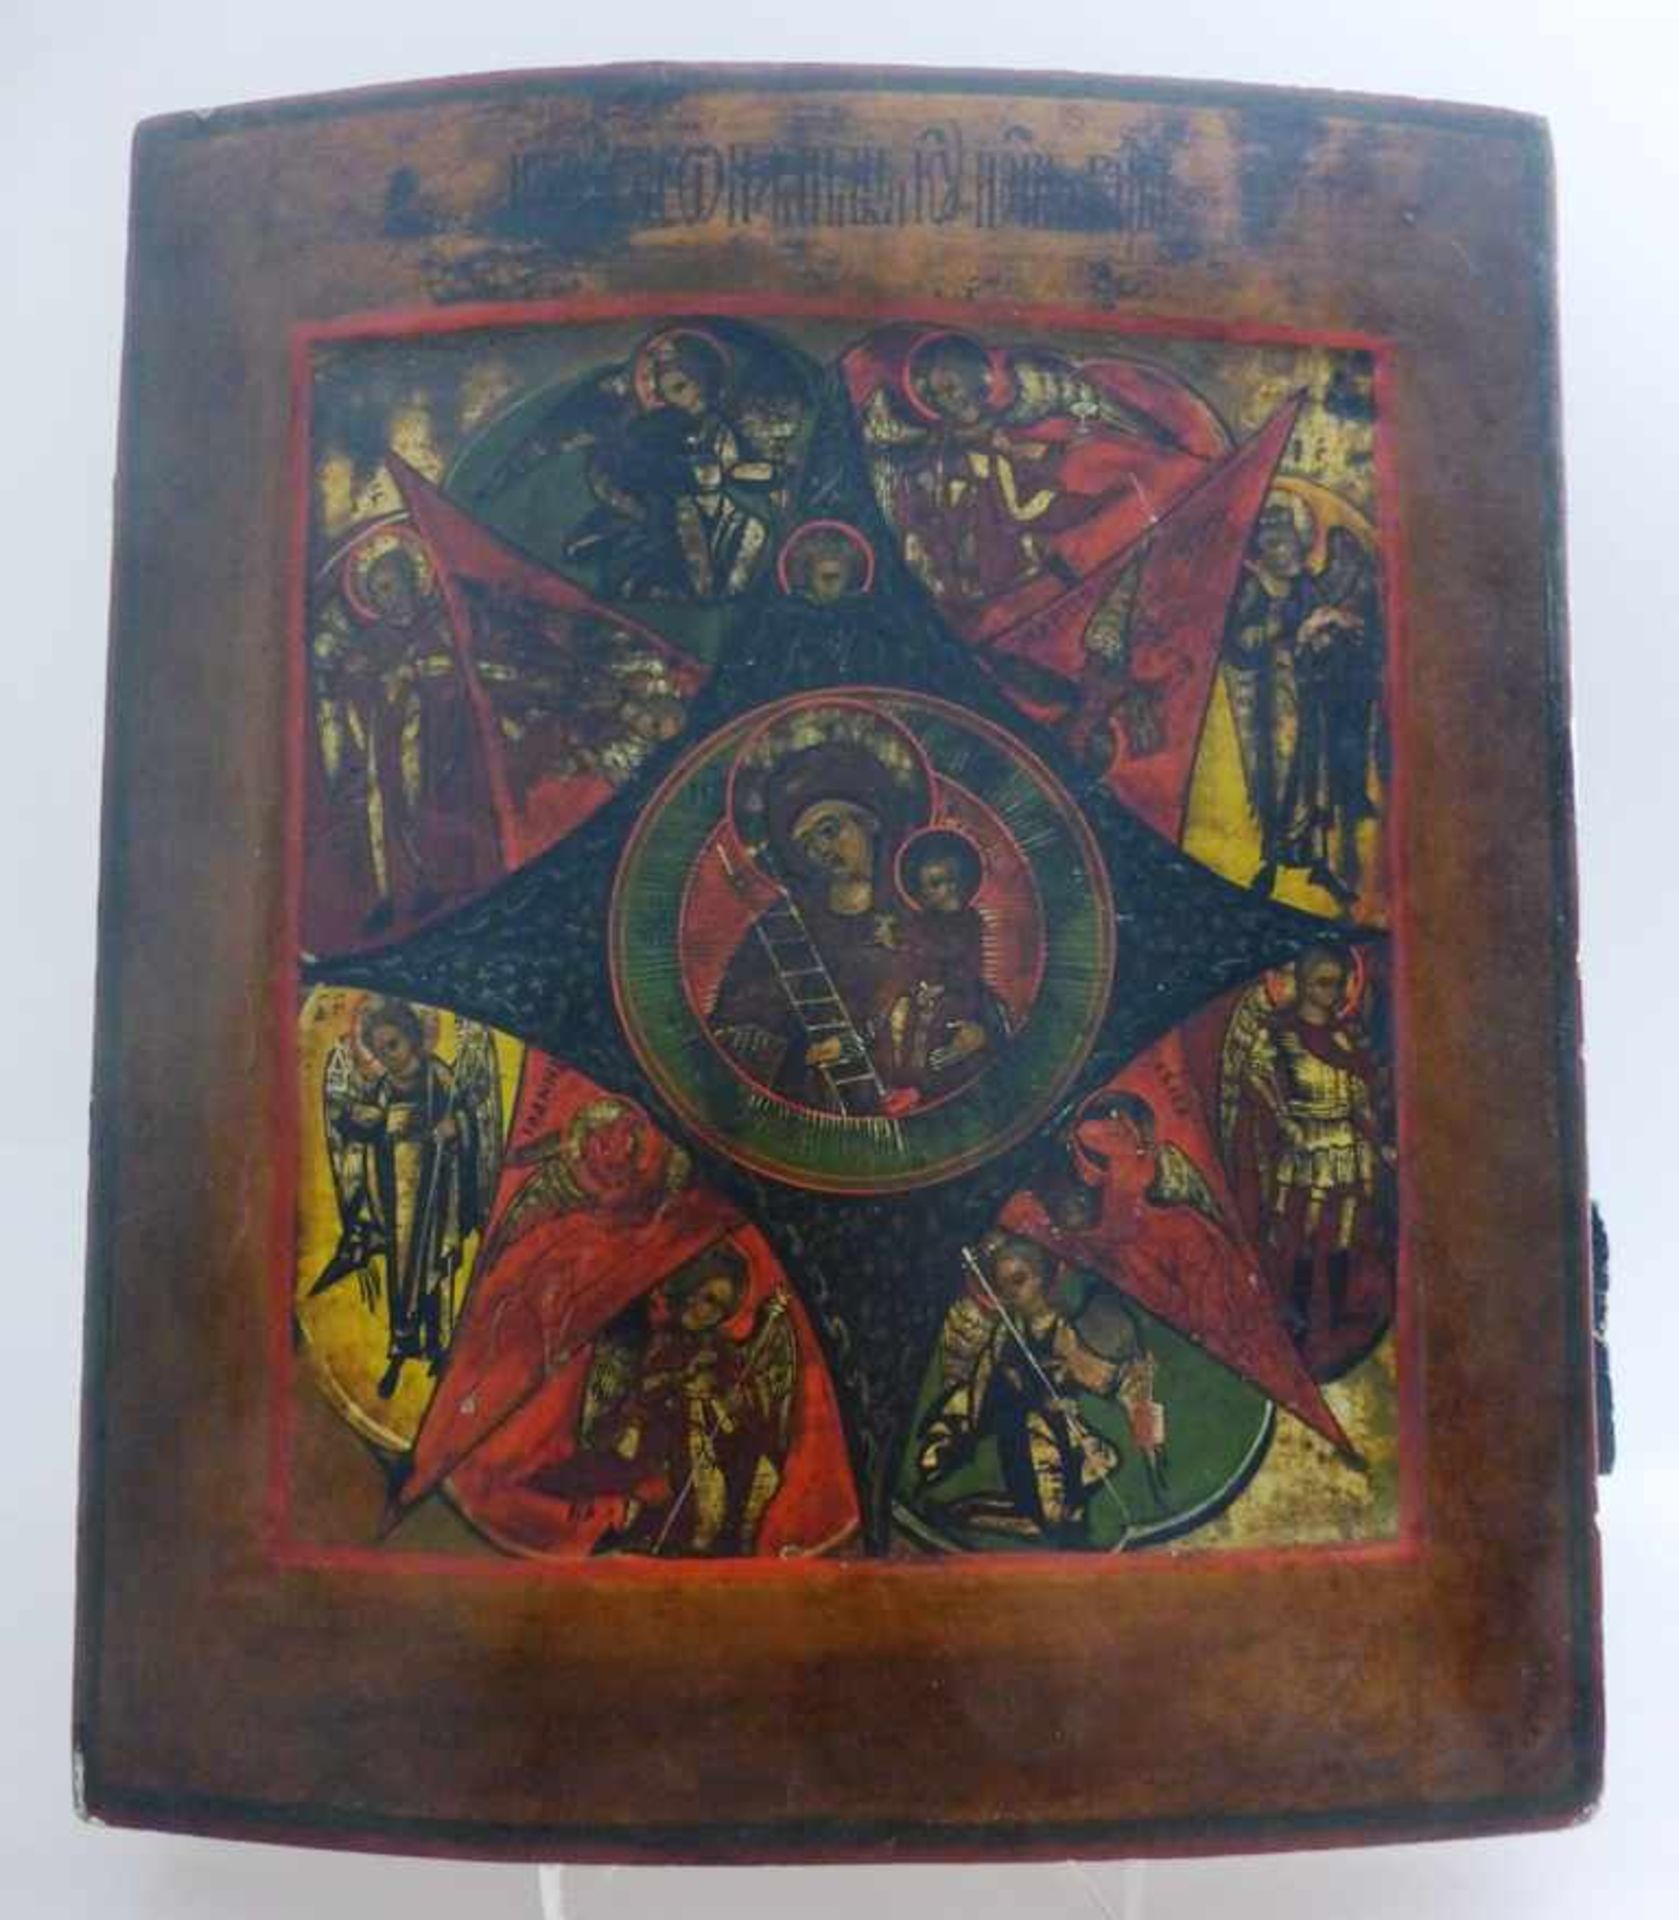 Ikone, Russland um 1800, Maria im Strahlenkranz, umgeben von Aposteln und Heiligen, 31cm x 26cm